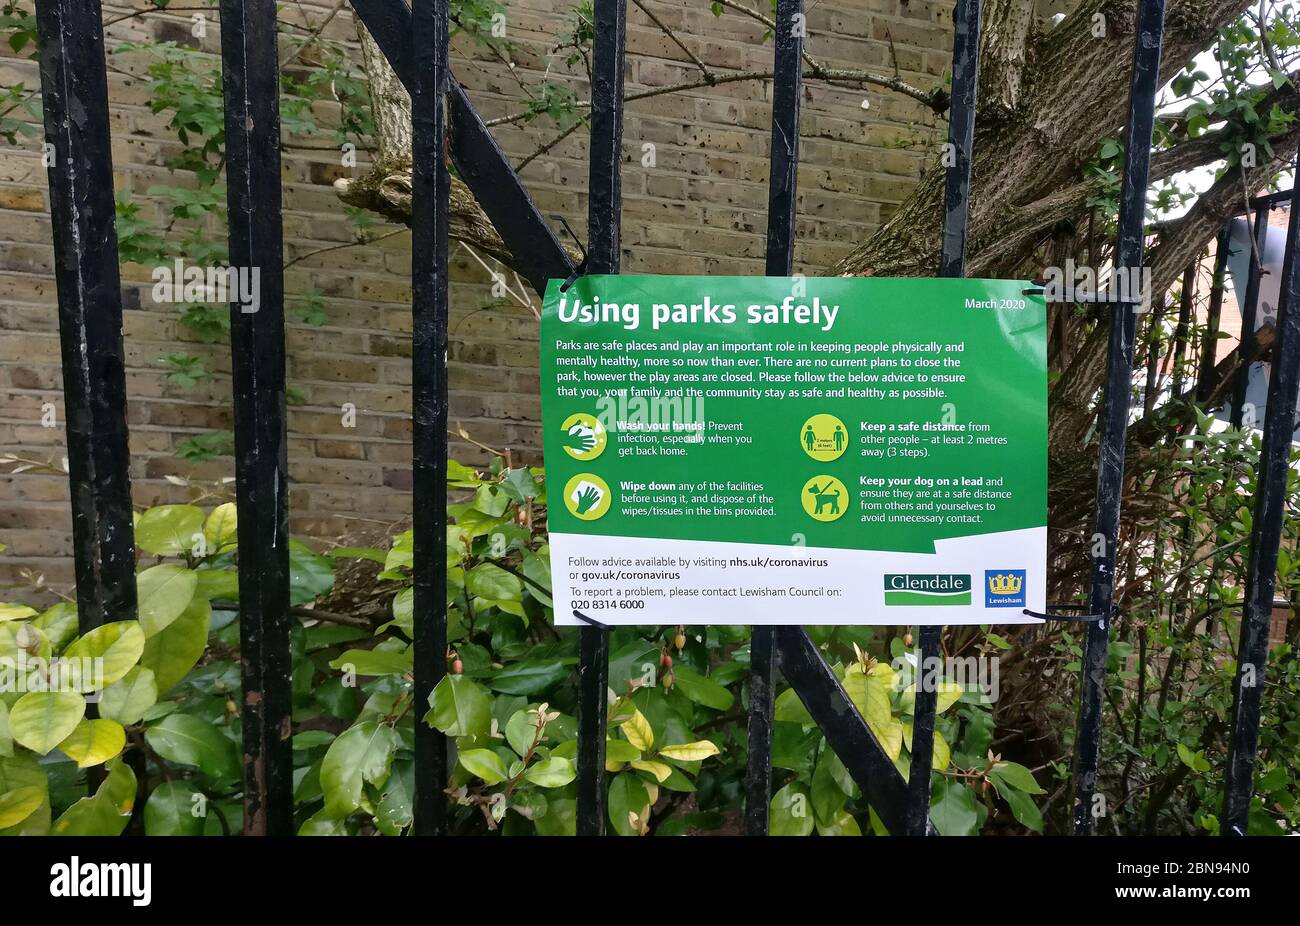 Londres, Royaume-Uni - 03 avril 2020 : panneau de sécurité pour les conseils de prévention des virus sur la clôture du parc de Lewisham en raison du coronavirus covid-19. De nombreux lieux publics Banque D'Images